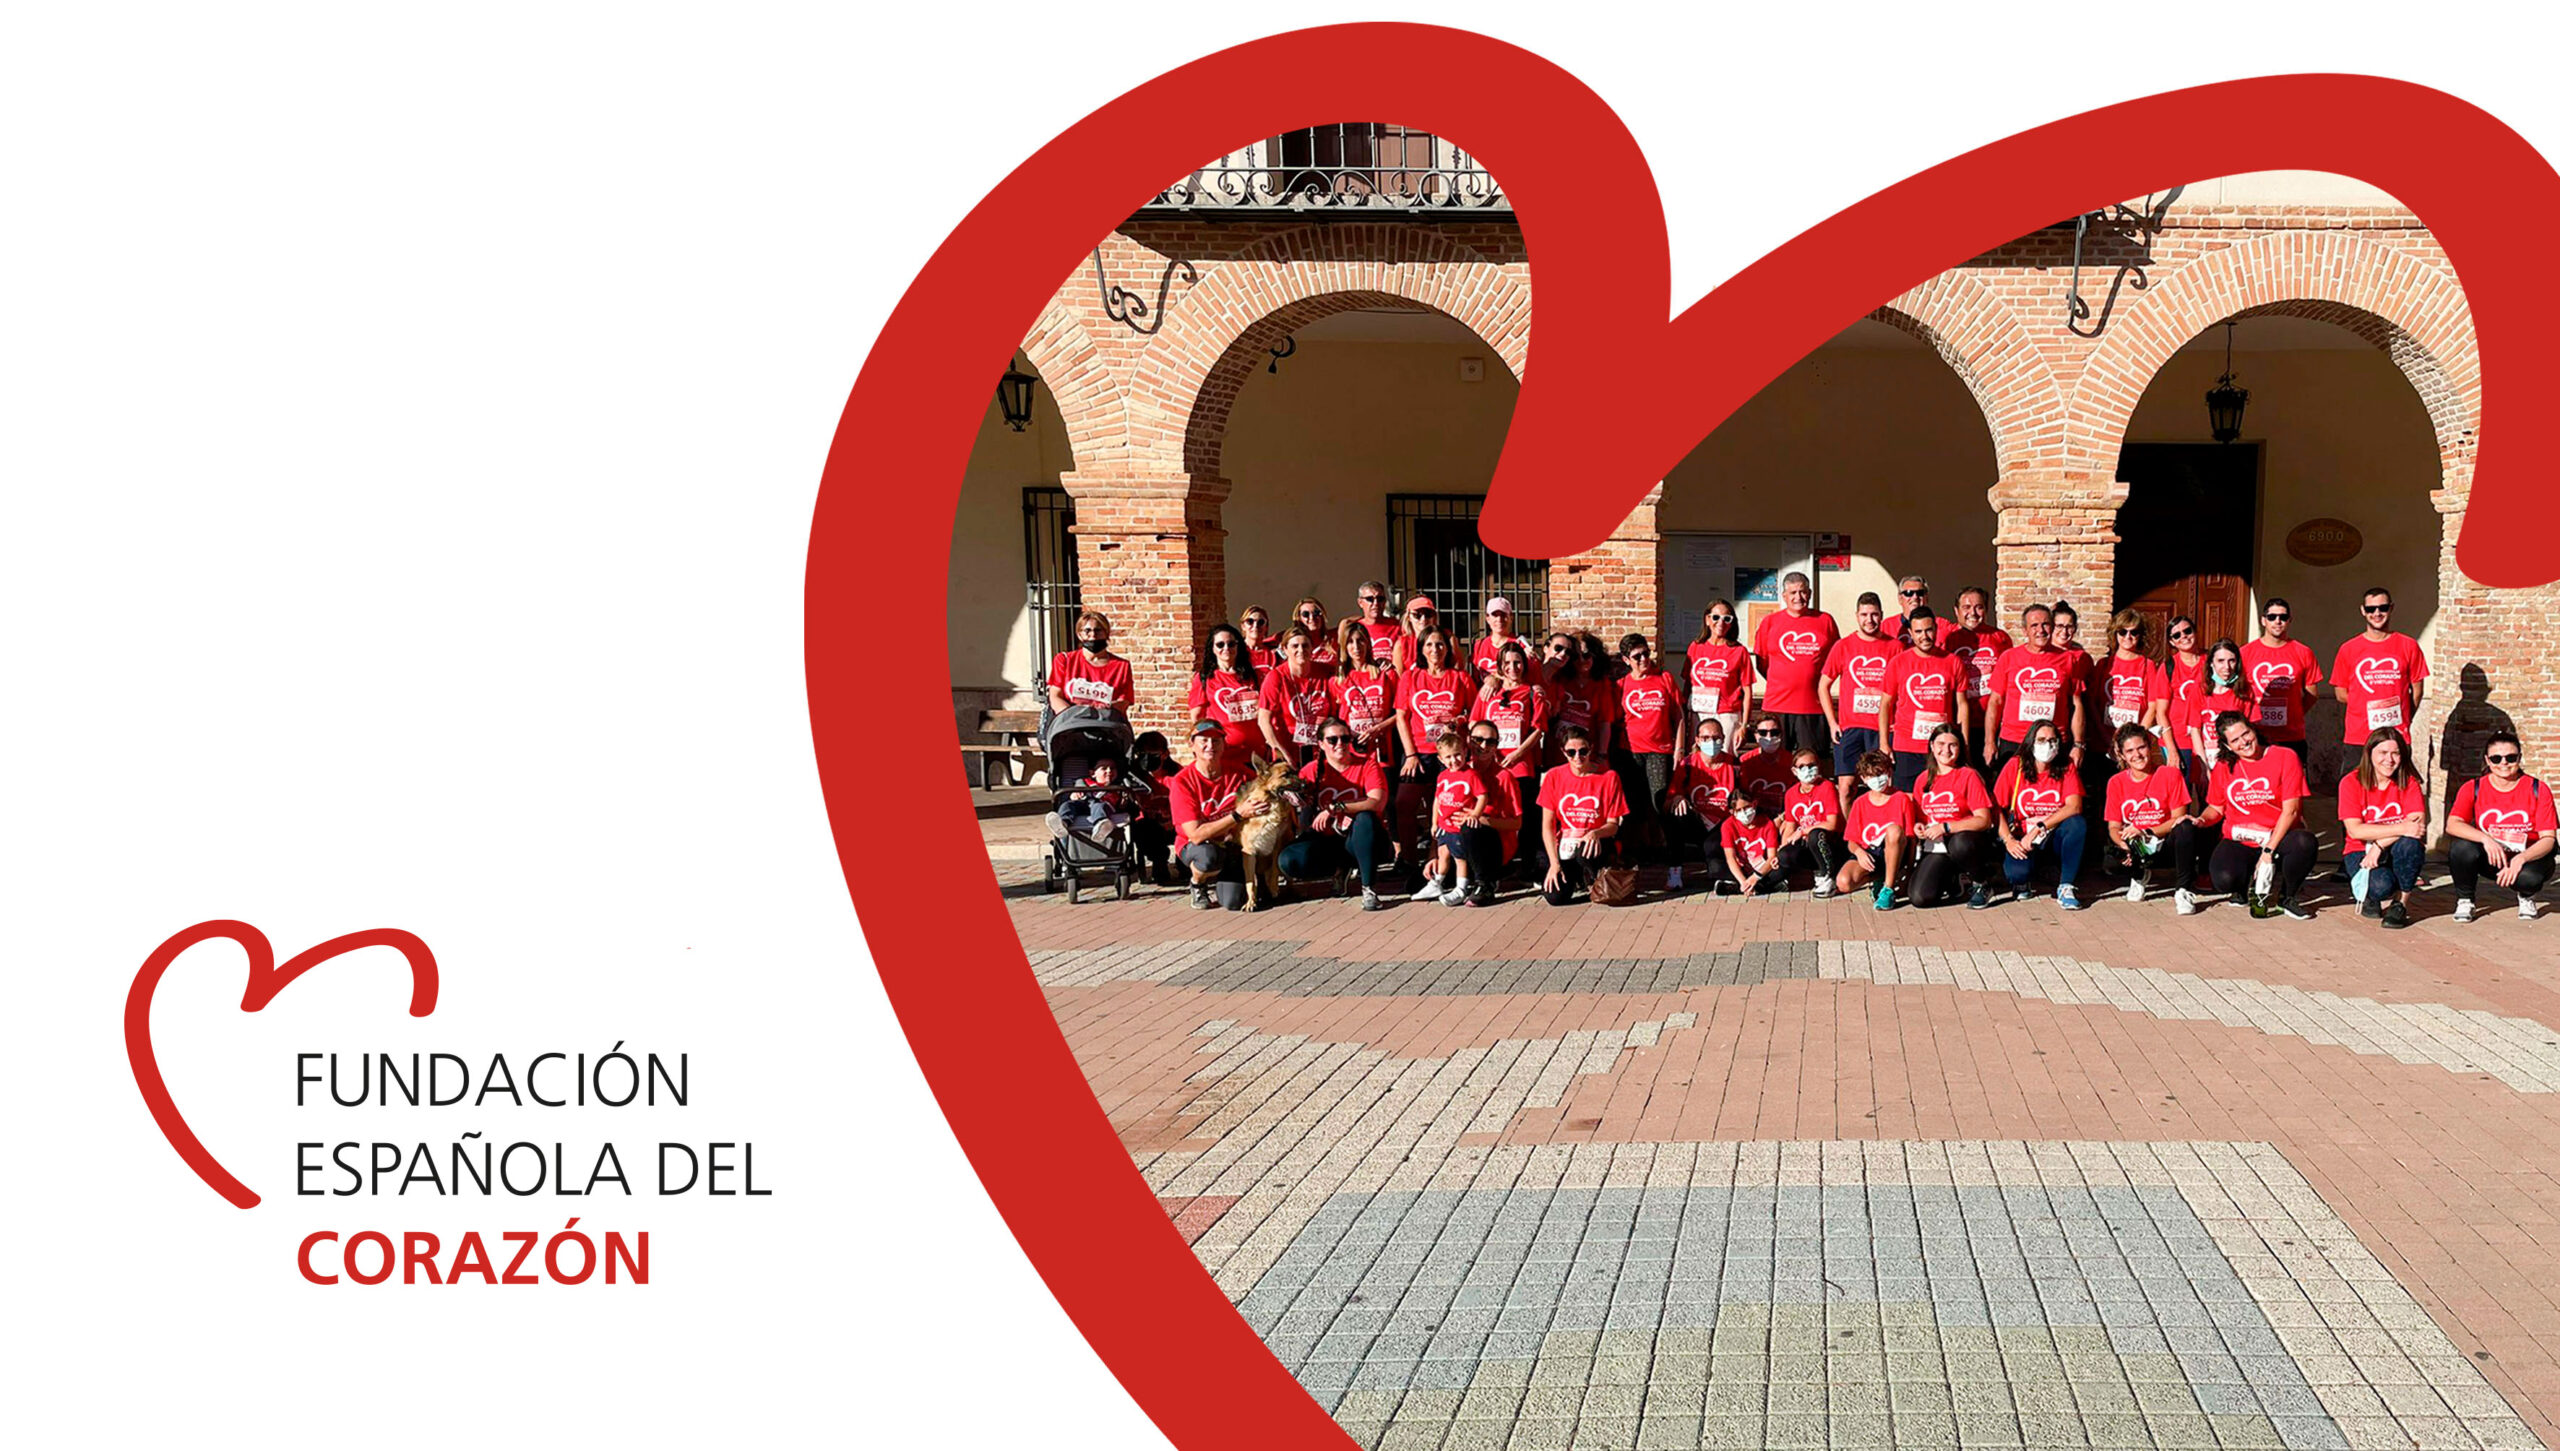 Fundación Española del corazón – PYME con mayor participación carrera solidaria